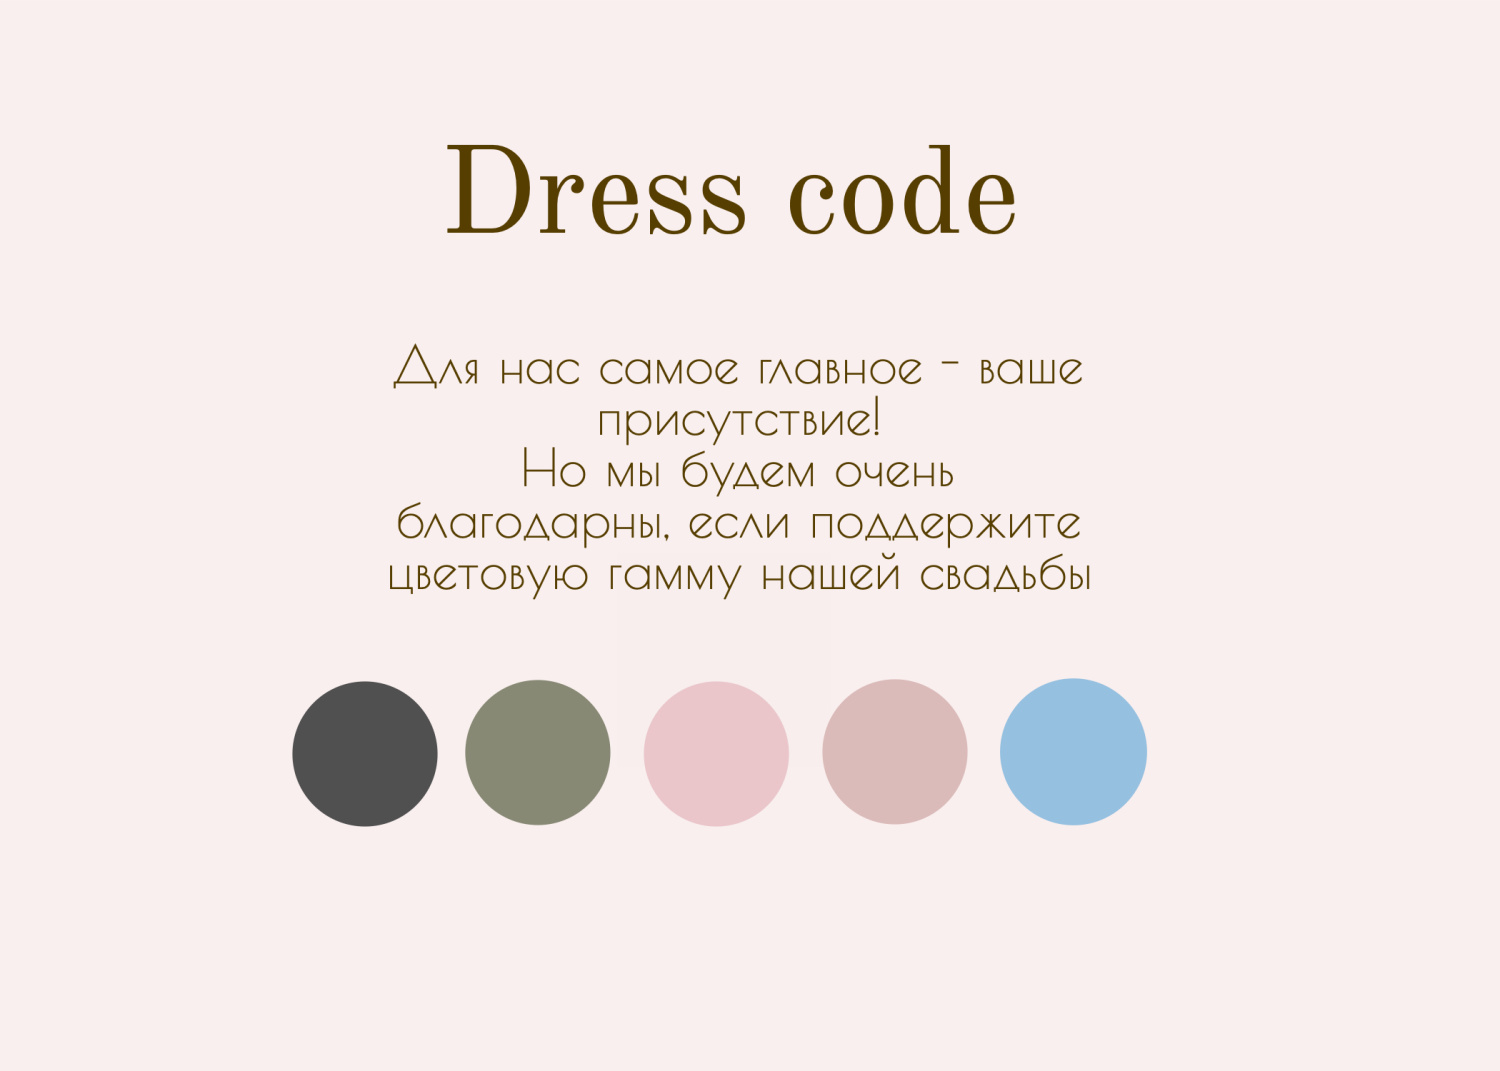 Дресс-код в стиле классическое розовое с инициалами